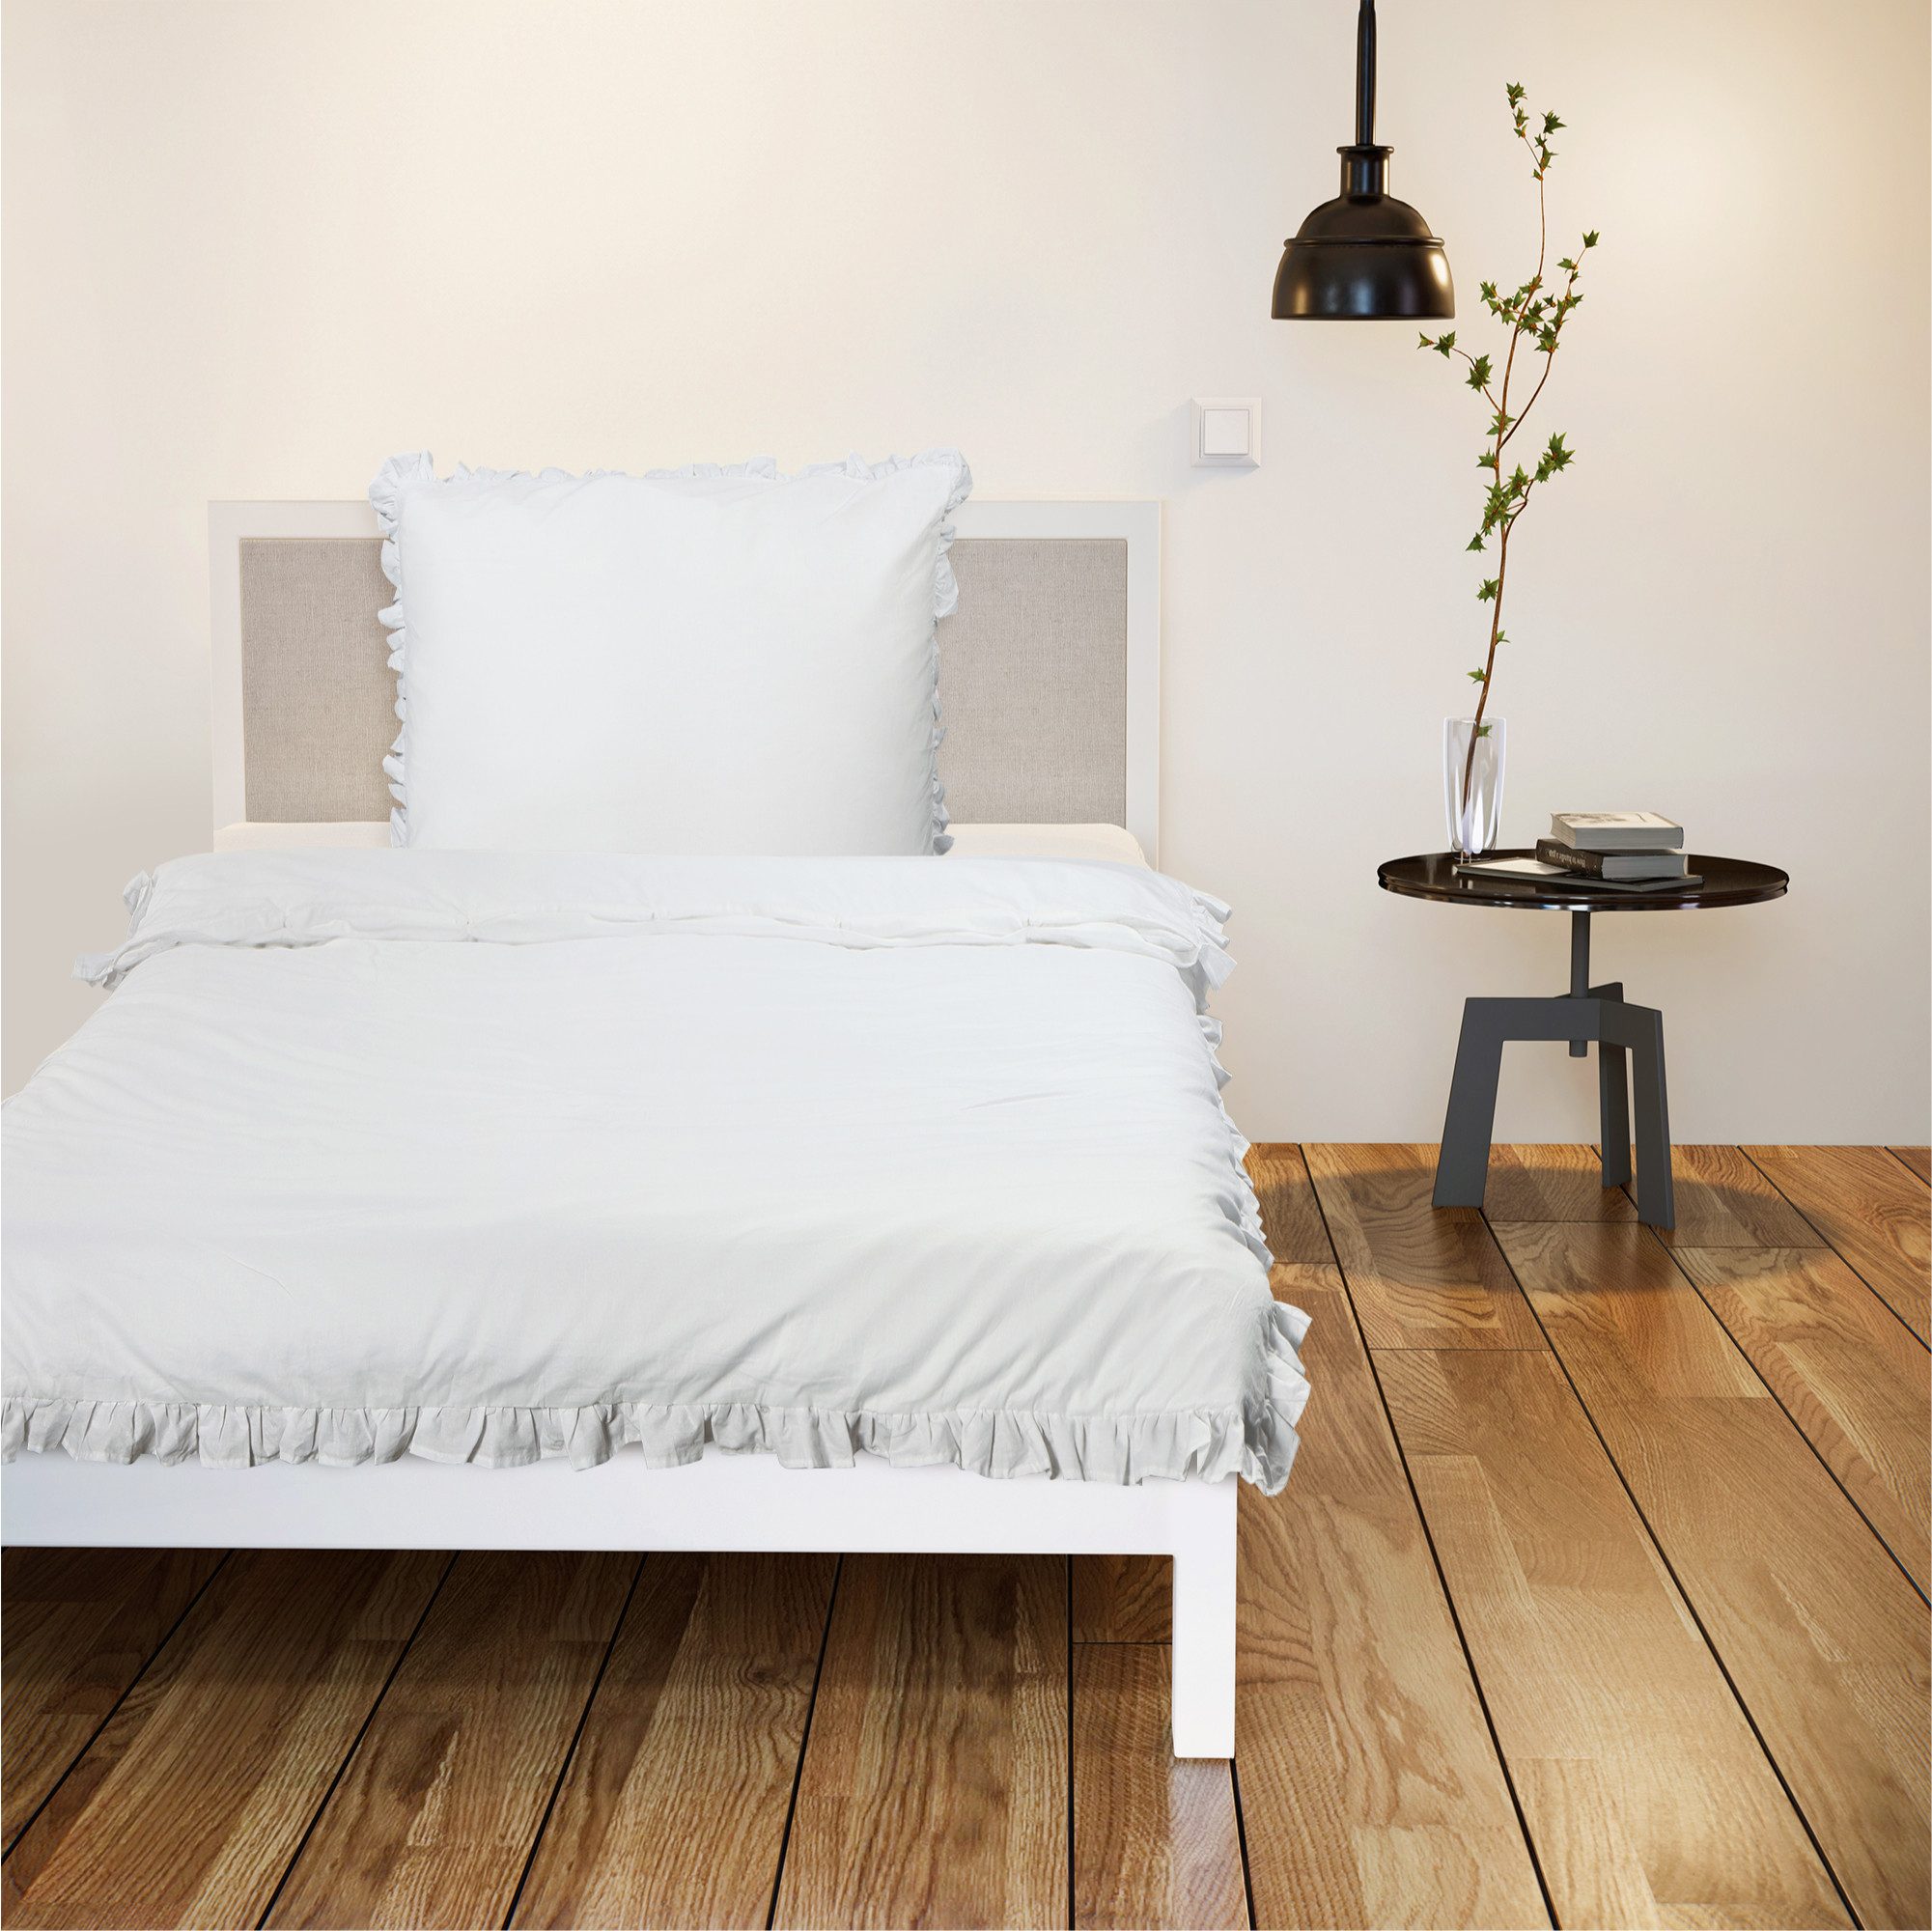 Bettwäsche Bettwäsche mit Rüschen Set - 135 x 200 cm - Einzel Set weiß, JEMIDI, 1 teilig